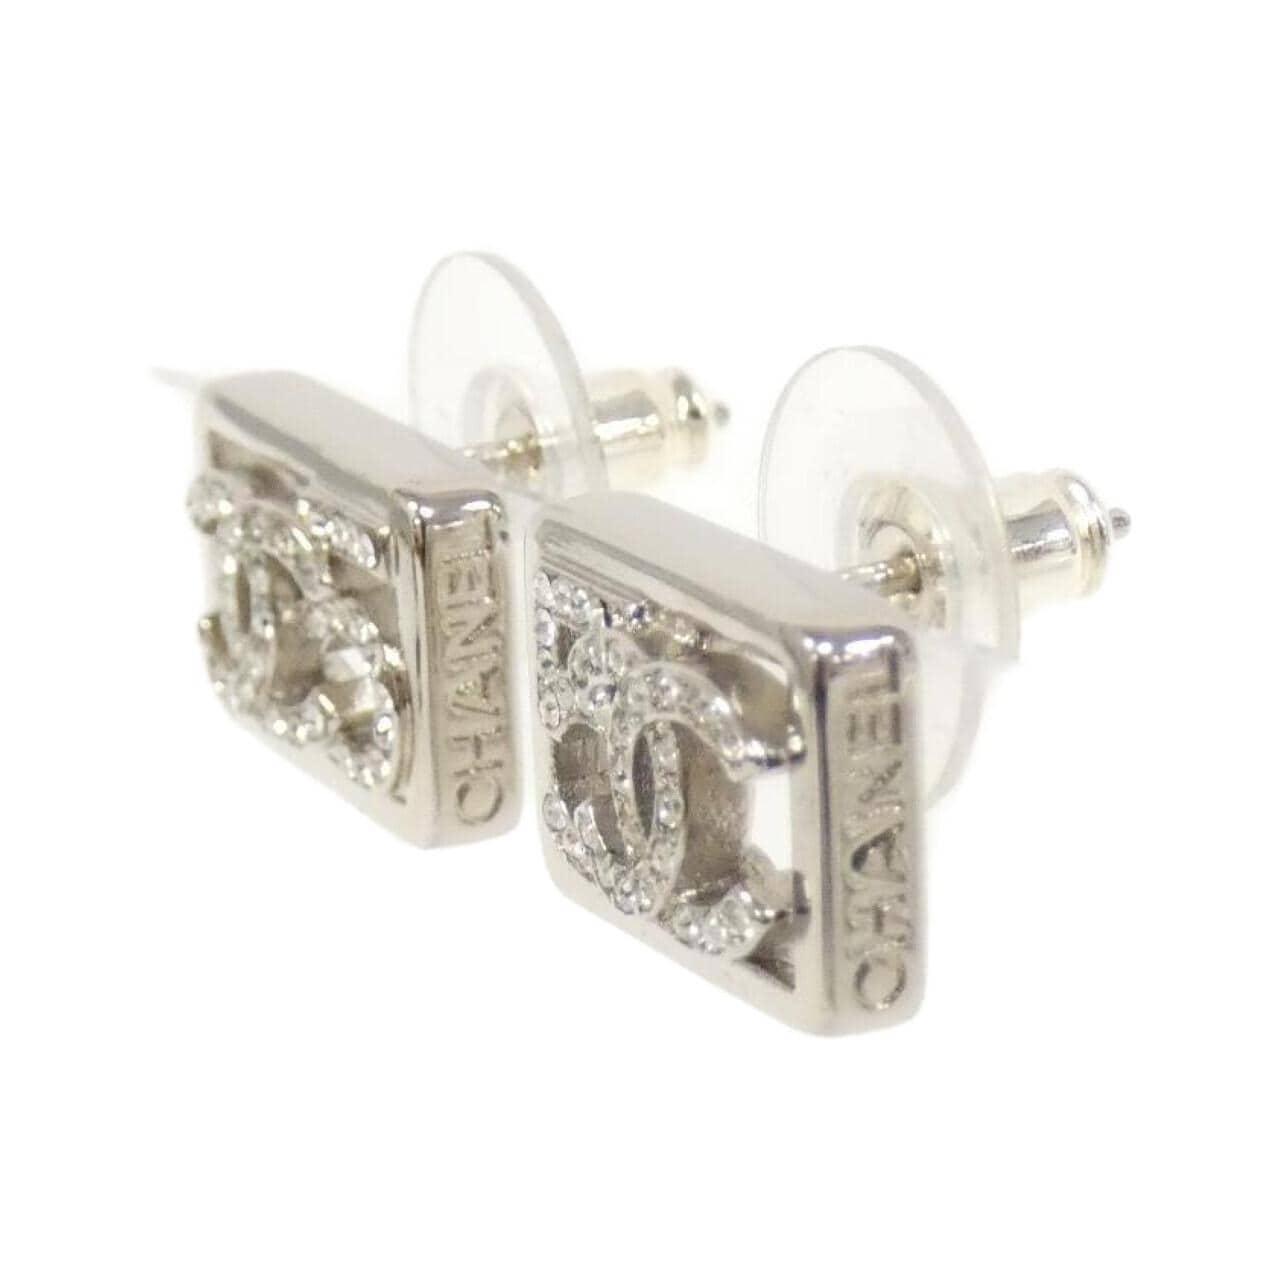 [Unused items] CHANEL earrings